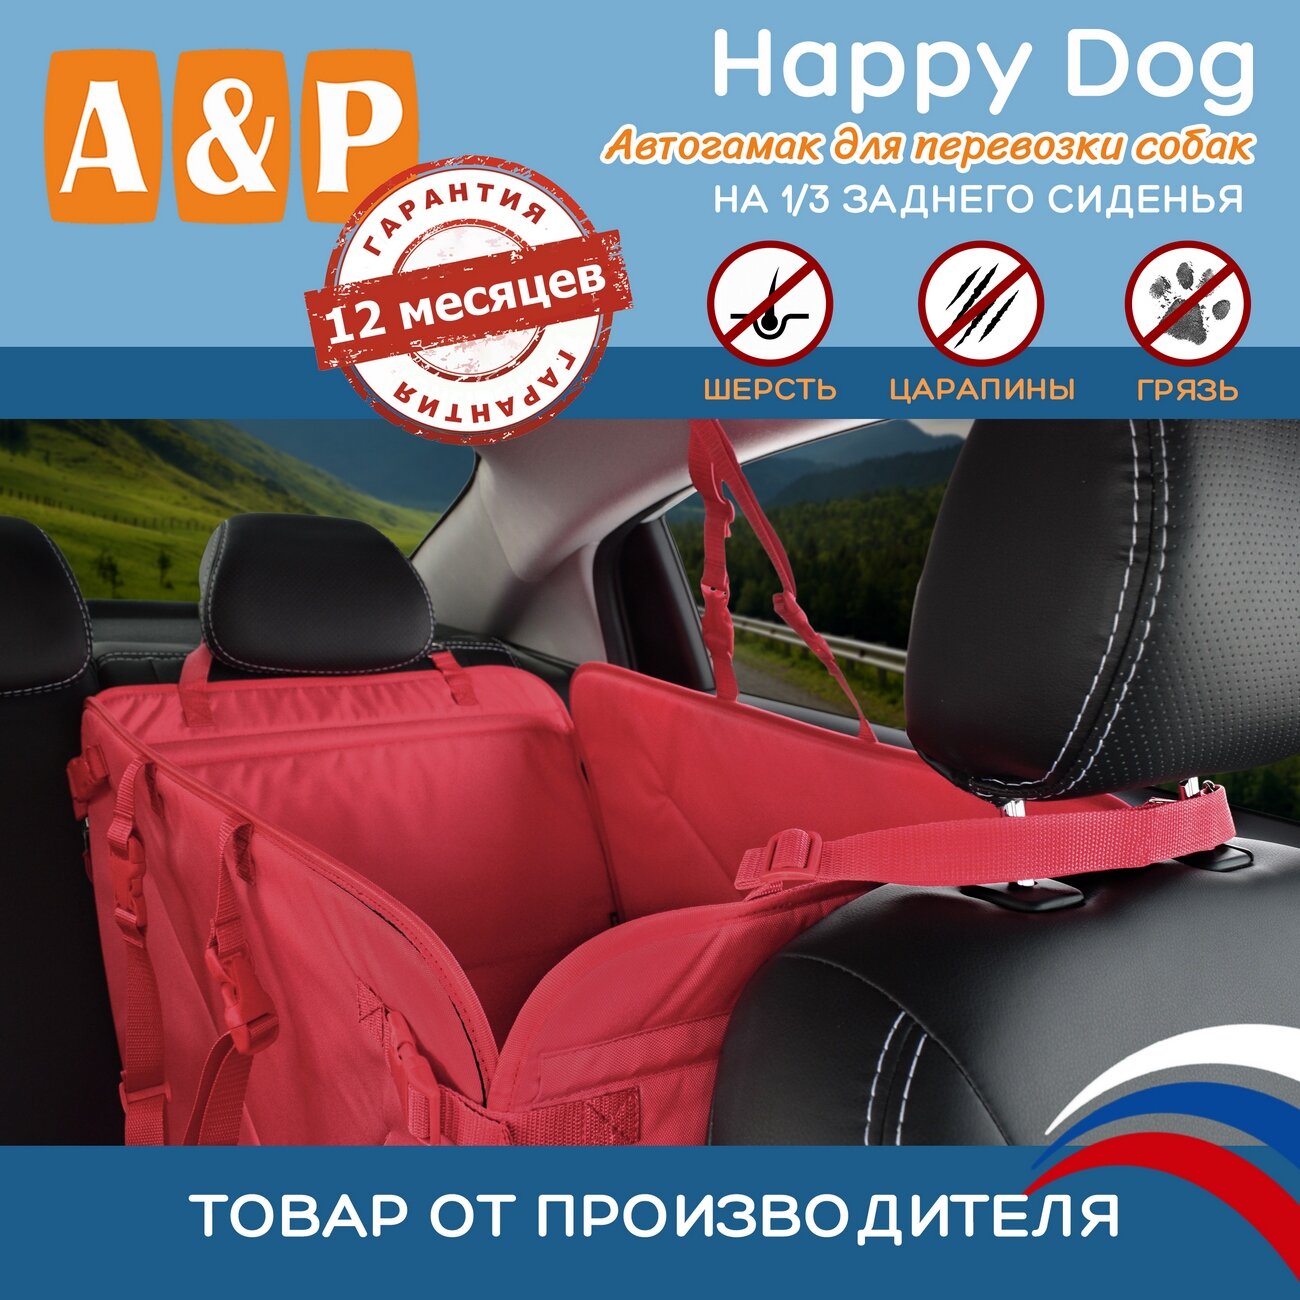 Автогамак Happy Dog (Хэппи Дог). На 1/3 заднего сиденья. Цвет: красный. - фотография № 1